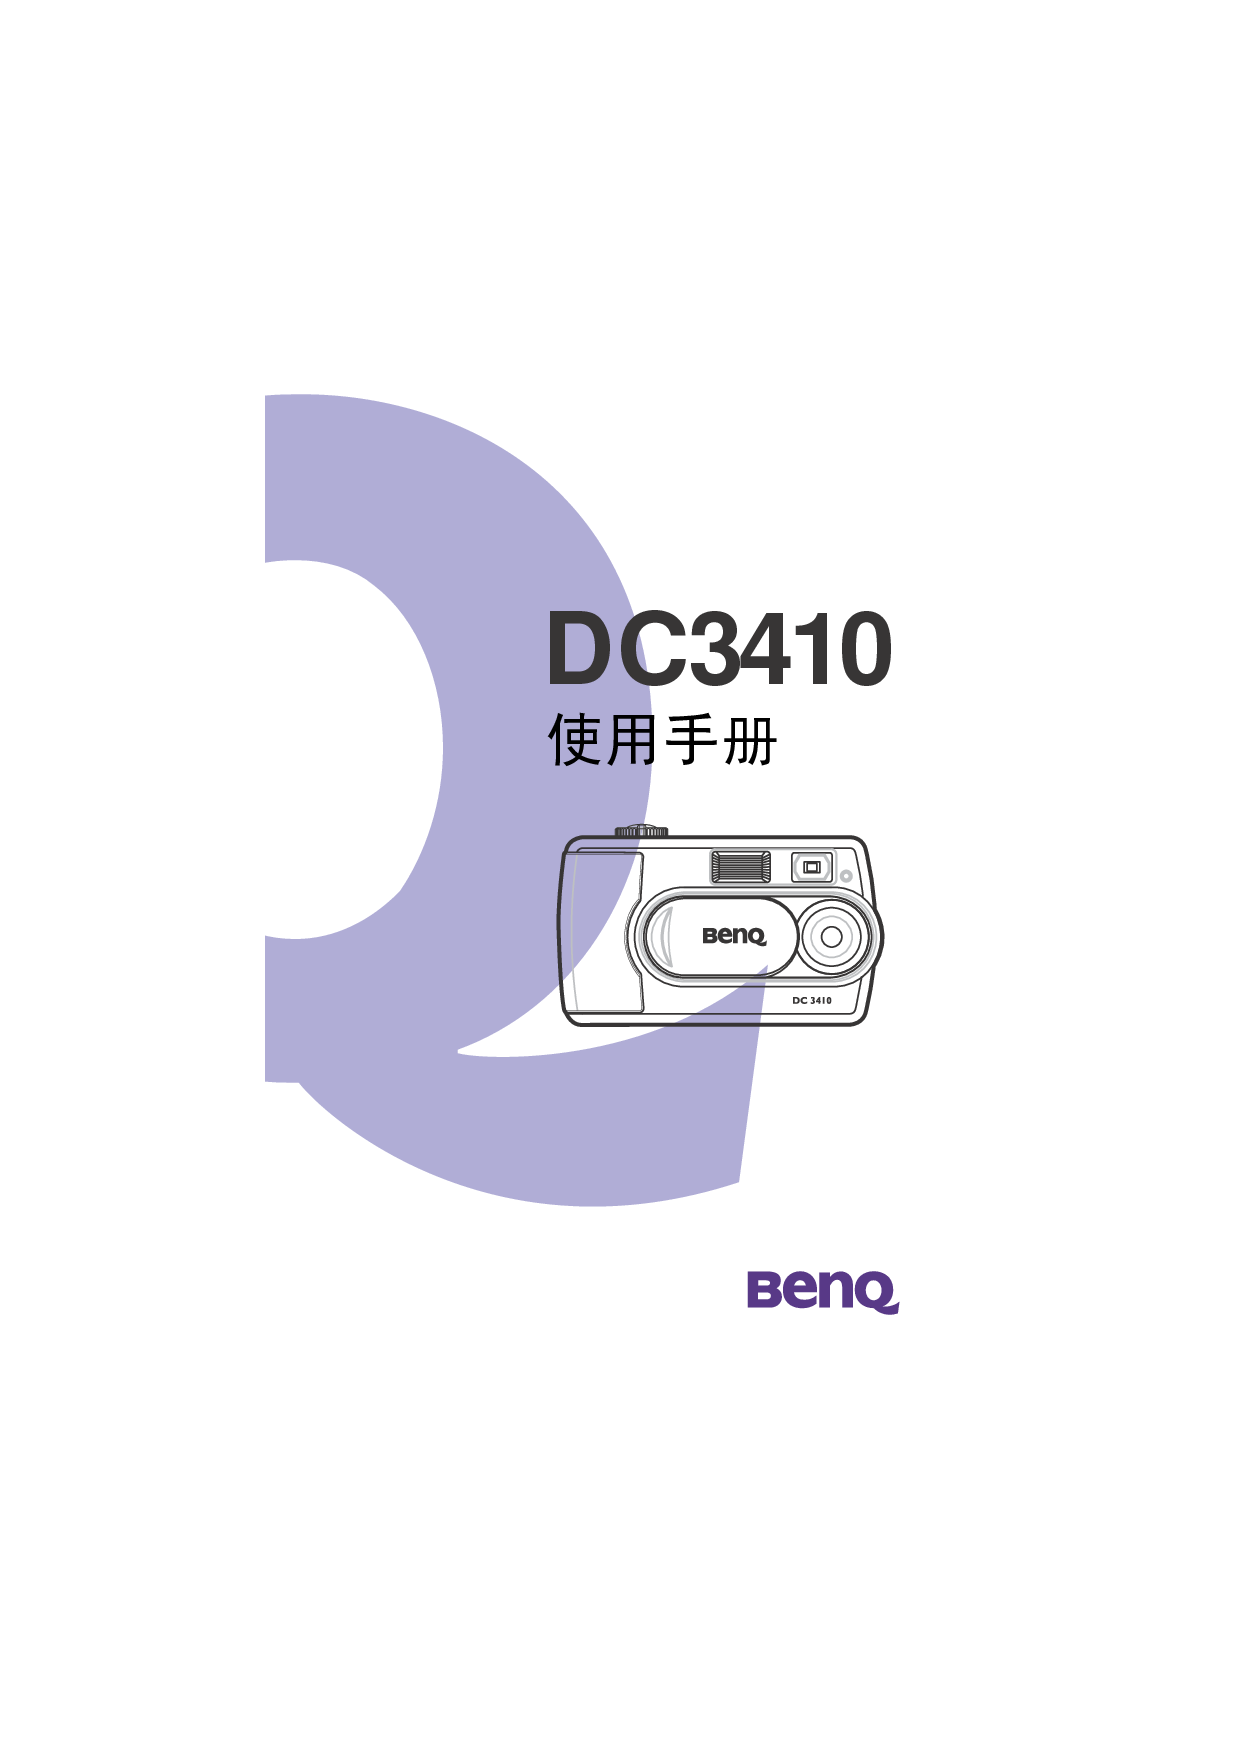 明基 Benq DC3410 使用手册 封面